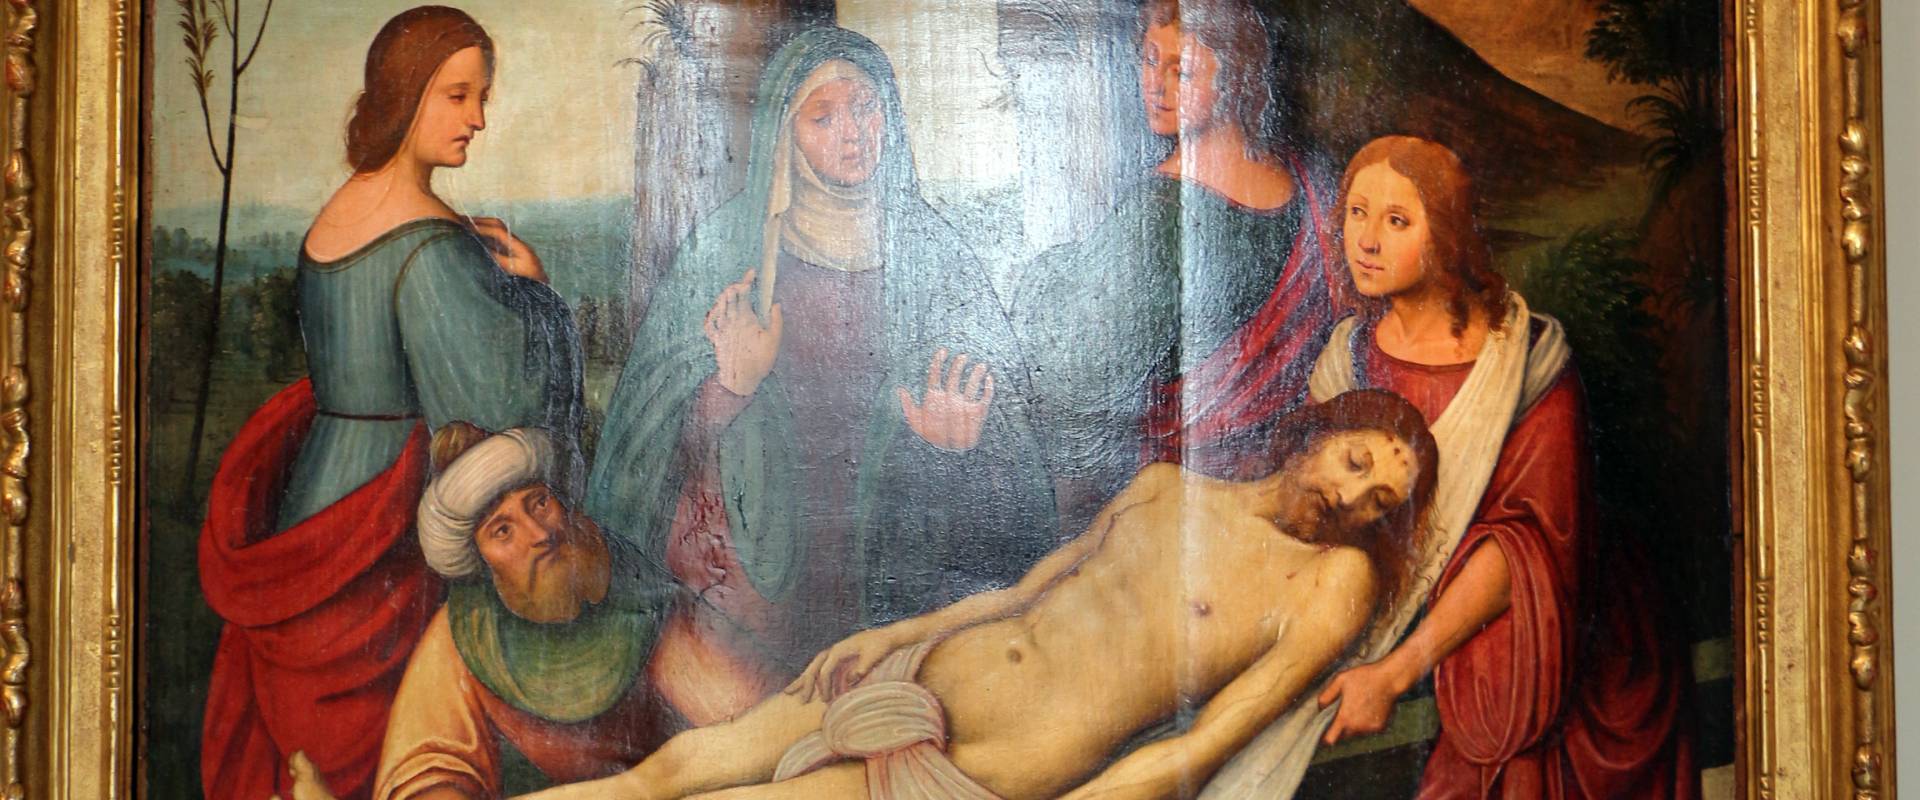 Lorenzo costa e bottega, sepoltura di gesù cristo, 1500-06, dall'annunziata 02 photo by Sailko